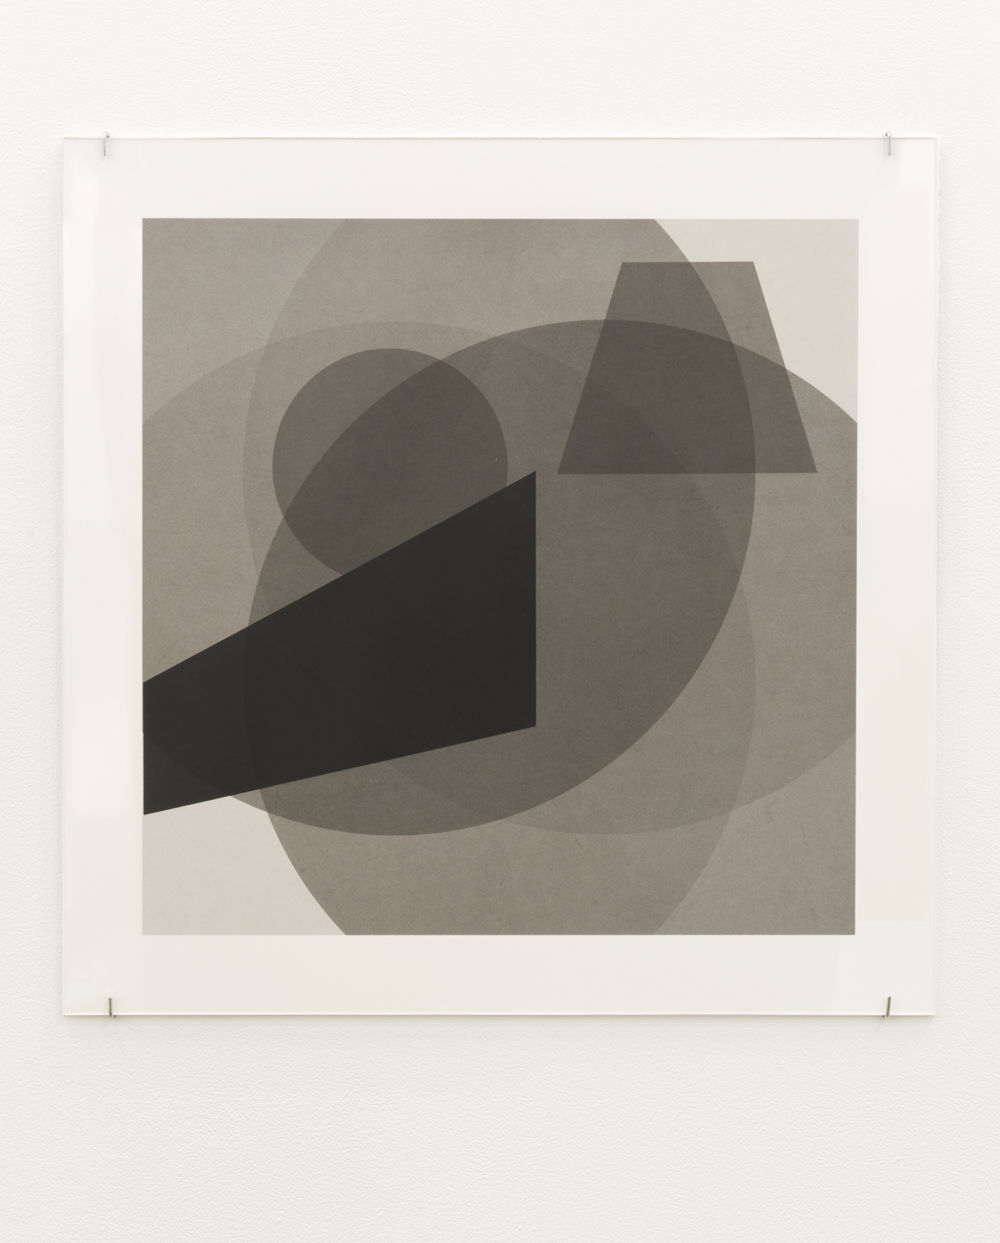 ​Janice Kerbel, Cue, 2011, silkscreen on paper, 22 x 22 in. (56 x 56 cm) by 